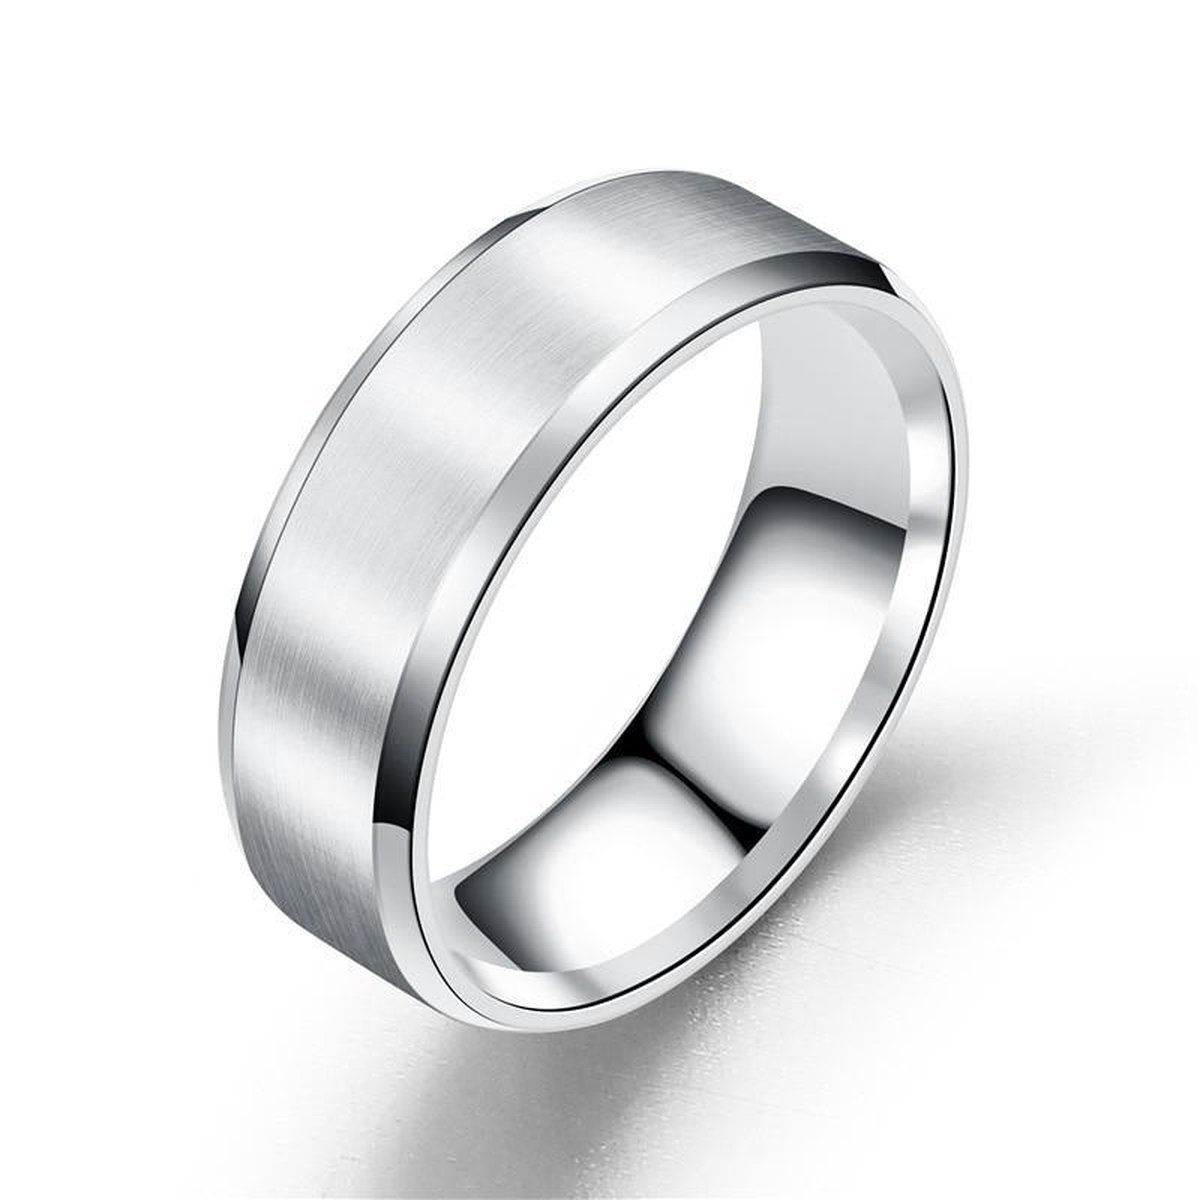 Zilver Kleurige Ring met Strak Gepolijste Rand | 18 - 22mm | Ringen Mannen | Ringen Dames | Ring Heren | Ringen Vrouwen | Ring Mannen | Cadeau voor Man | Mannen Cadeautjes | Valentijn Cadeautje voor Hem - TrendFox